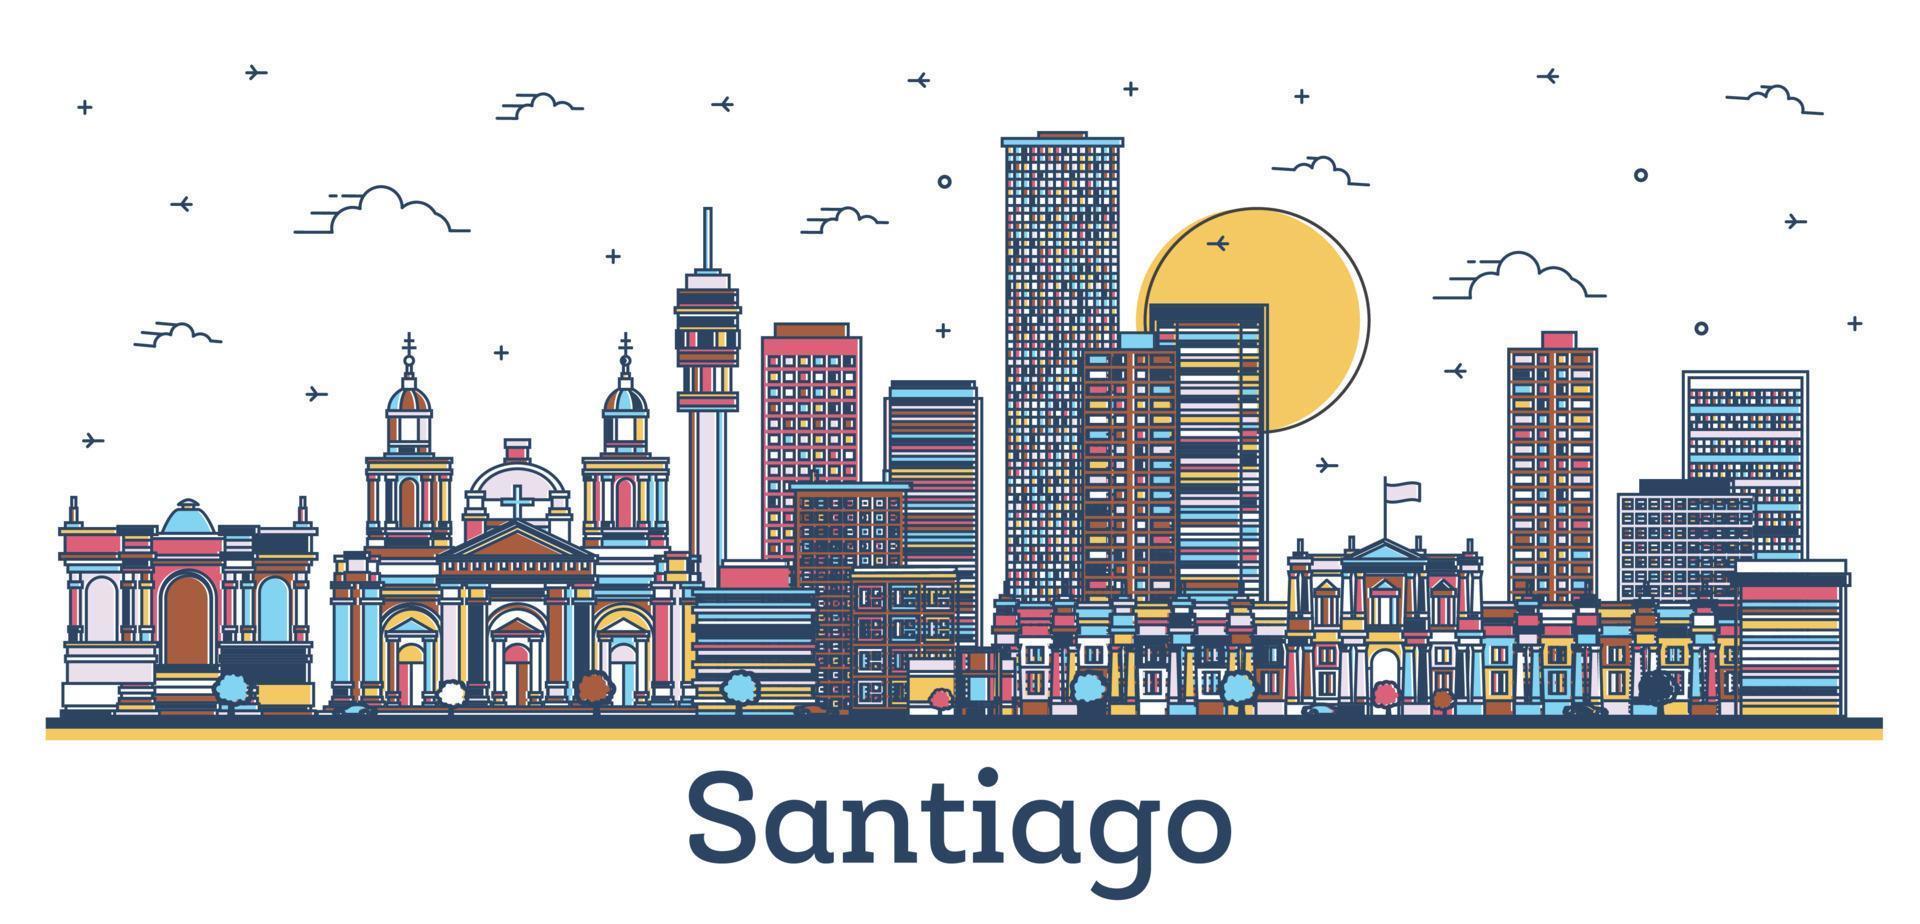 delineie o horizonte da cidade de santiago chile com edifícios modernos e históricos coloridos isolados em branco. vetor